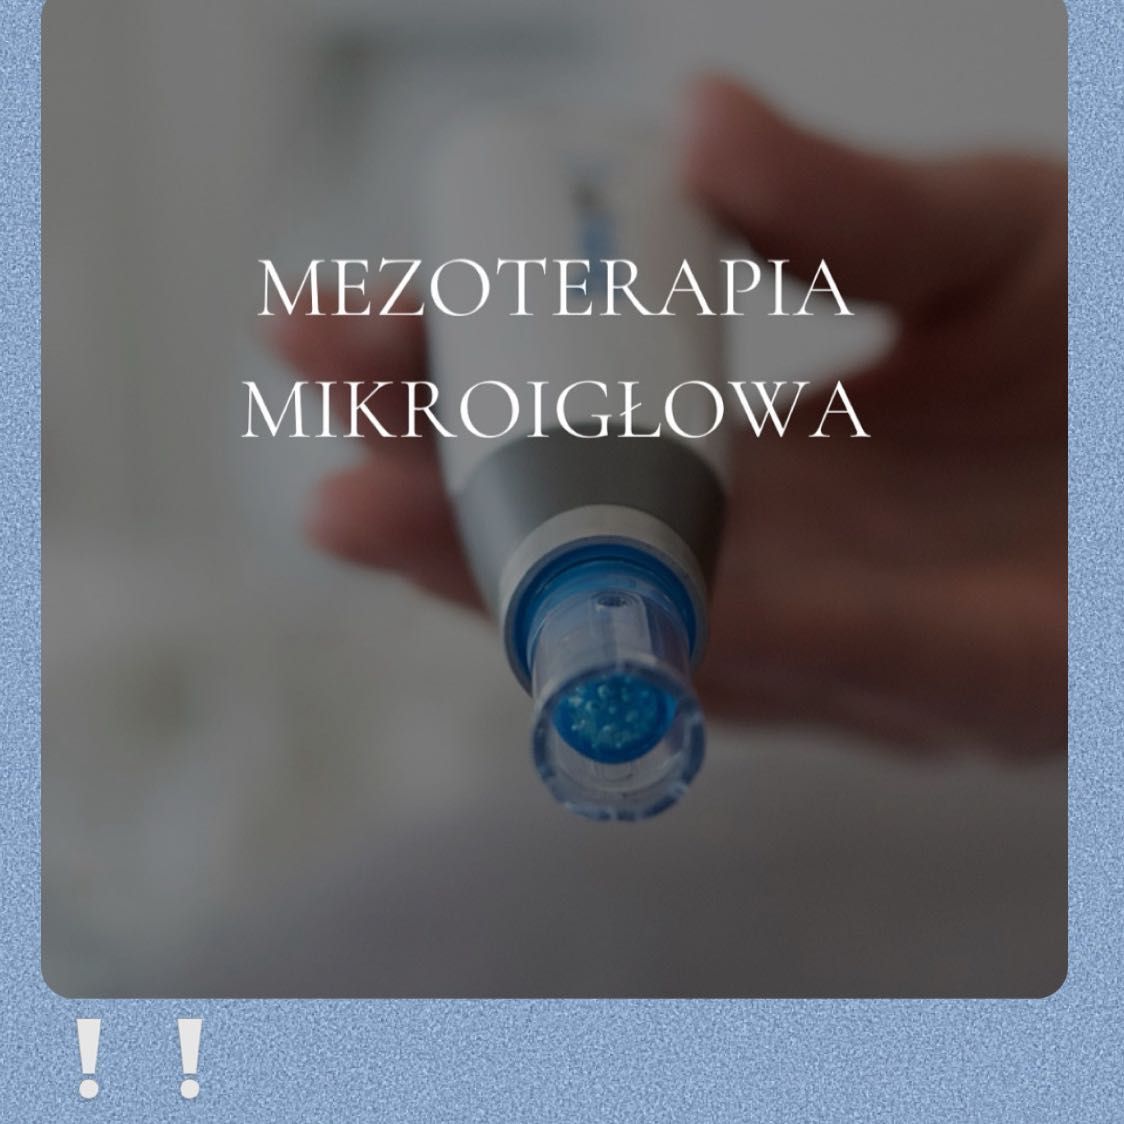 Portfolio usługi Mezoterapia mikroigłowa (nawilżanie) amino-komplex